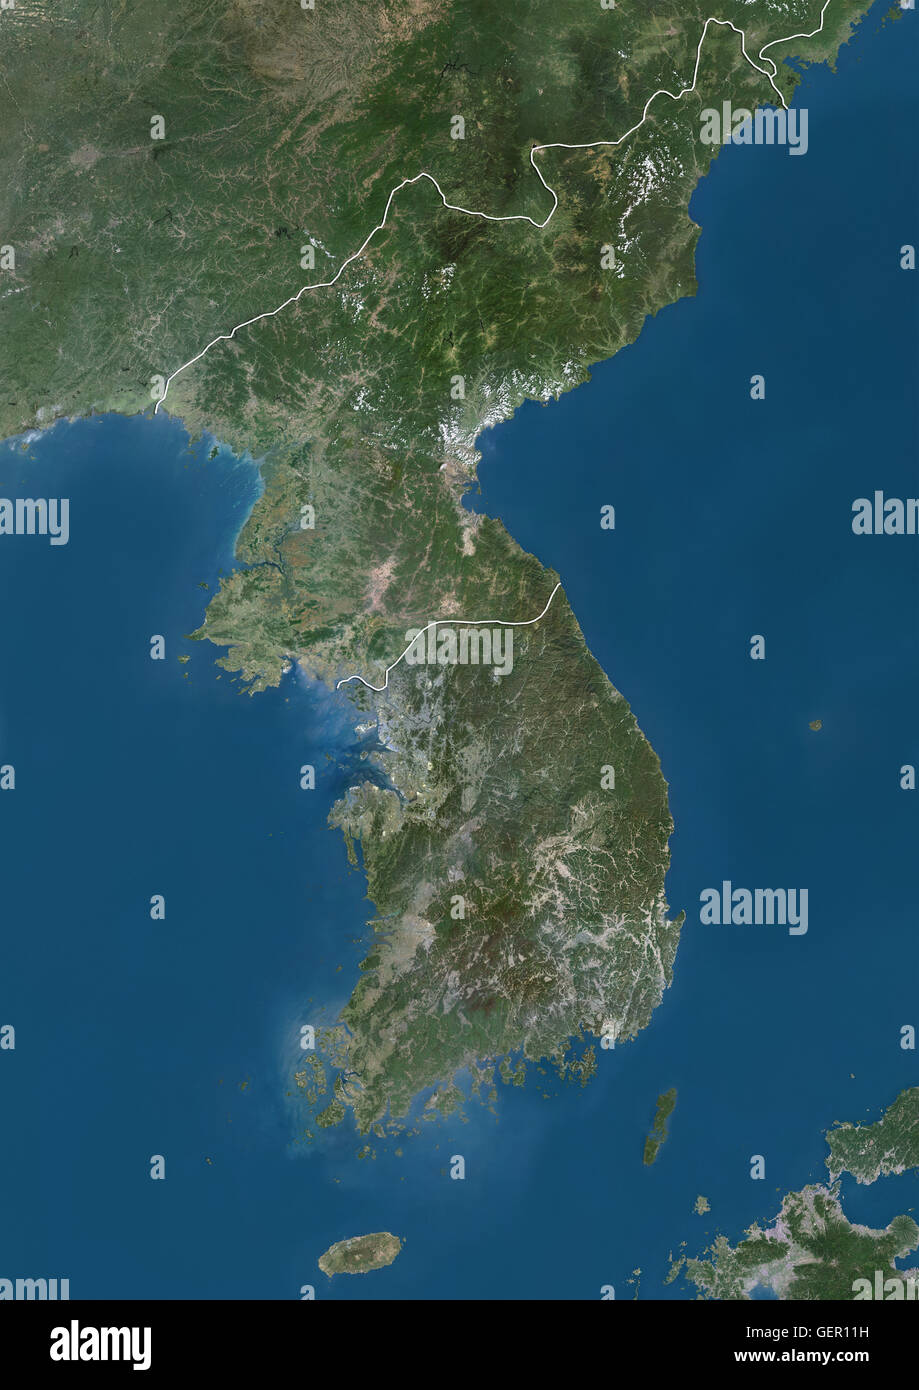 Vista satellitare della Corea del Nord e Corea del Sud (con i confini del paese). Questa immagine è stata elaborata sulla base dei dati acquisiti dai satelliti Landsat. Foto Stock